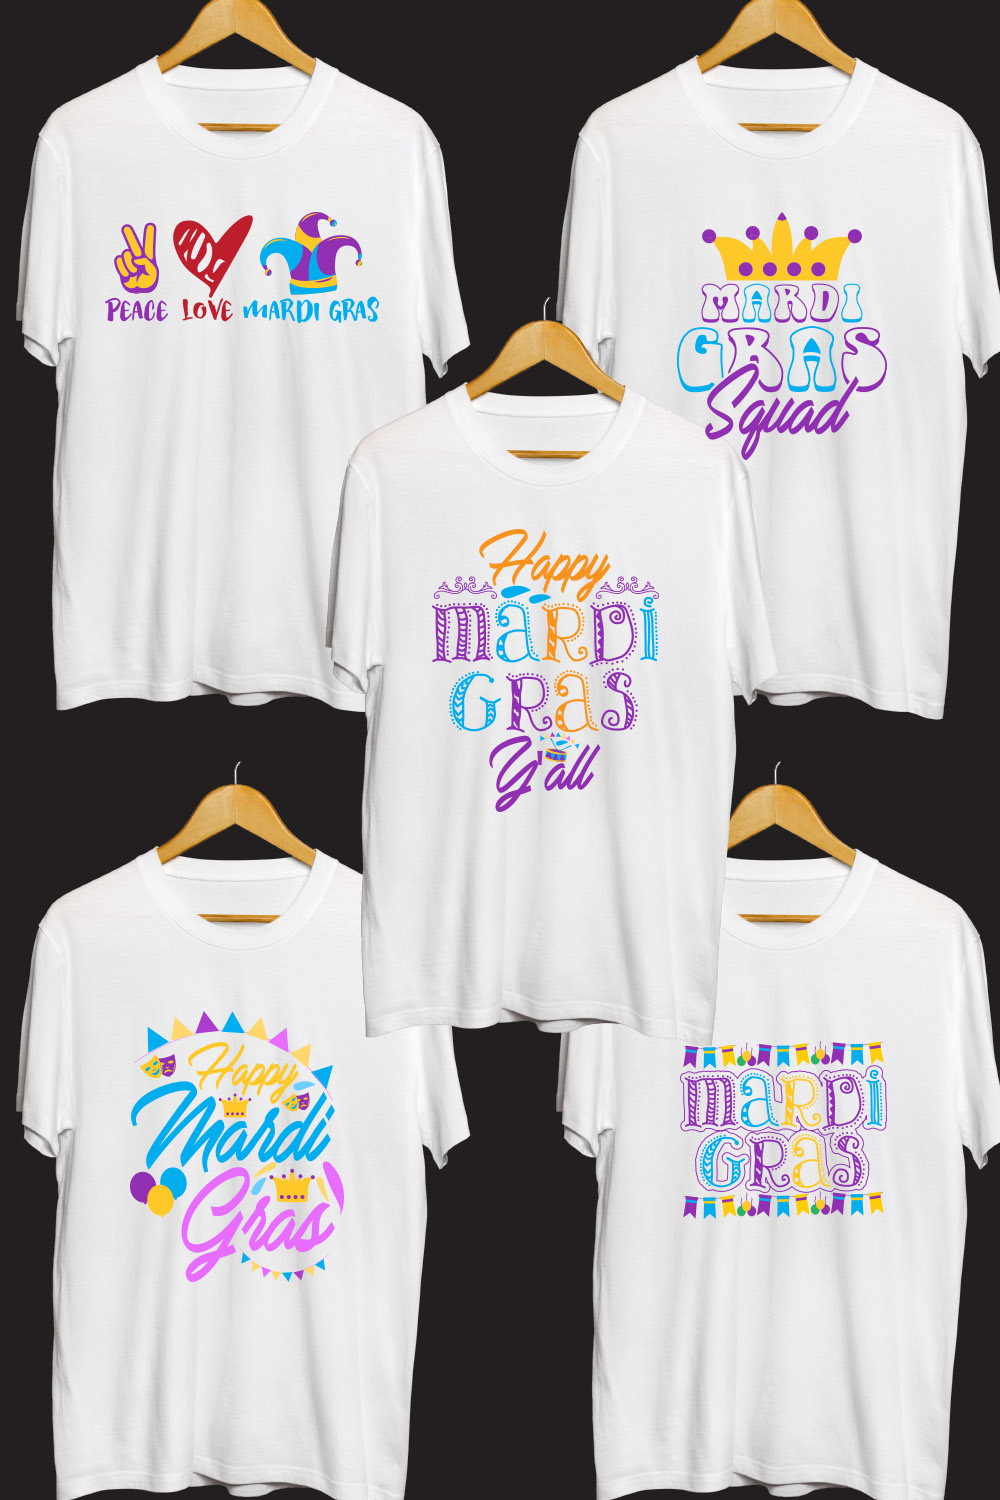 Mardi Gras SVG T Shirt Designs Bundle pinterest preview image.